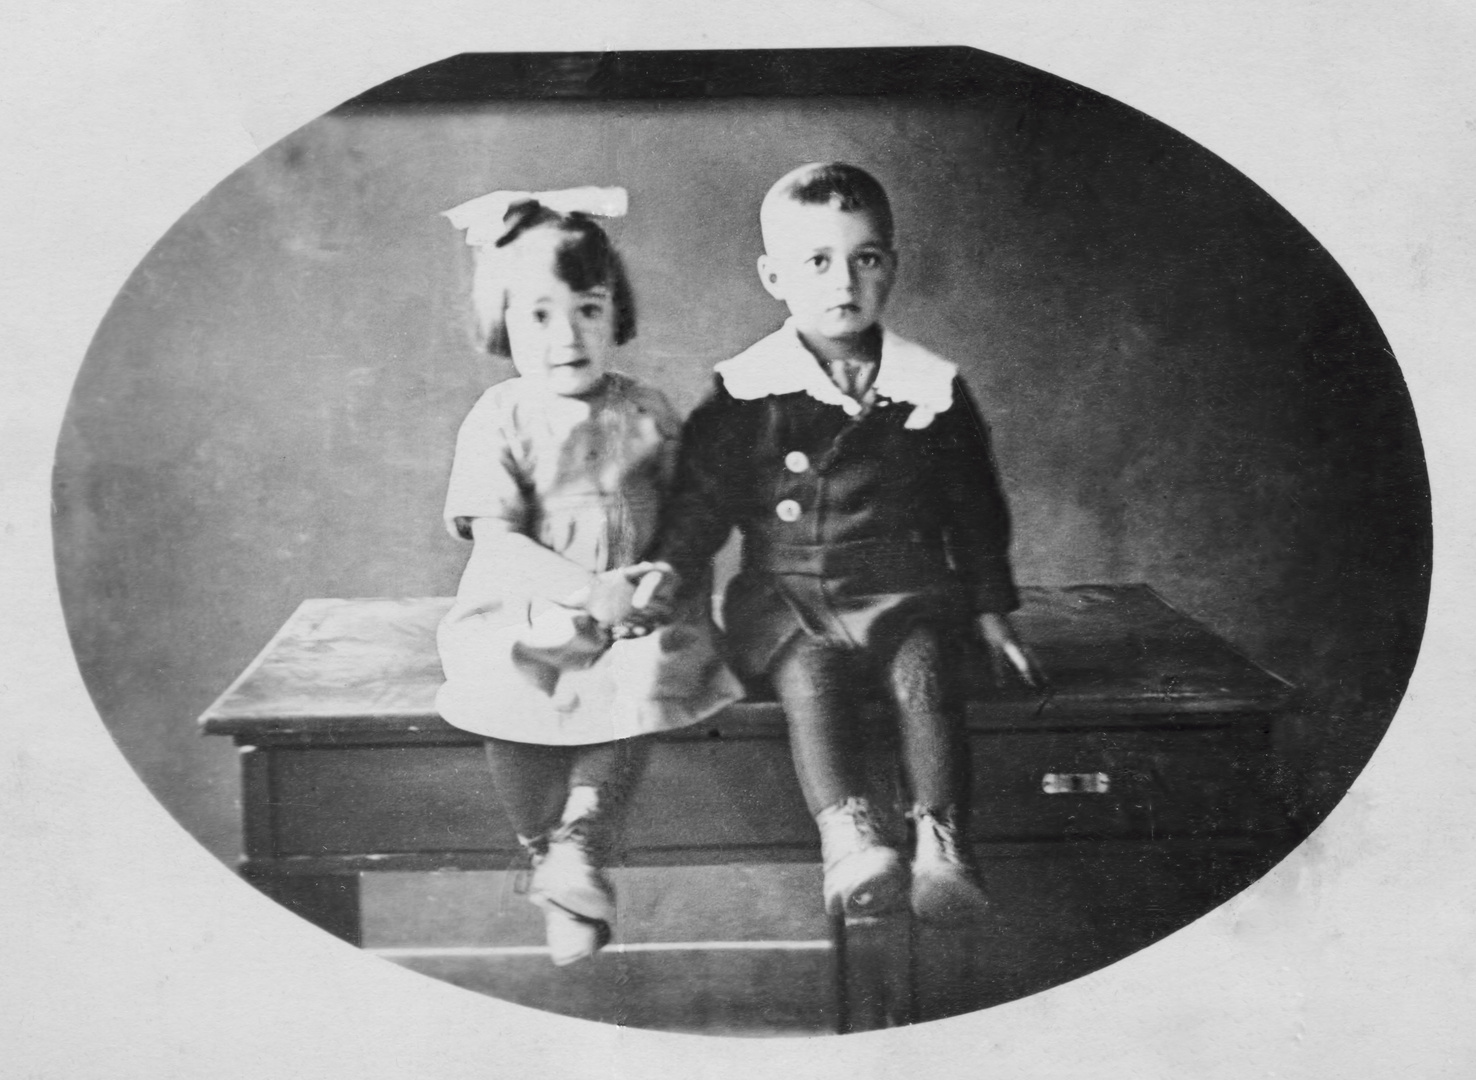 Wie dazumal - Meine Mutter mit ihrem Bruder 1924/25